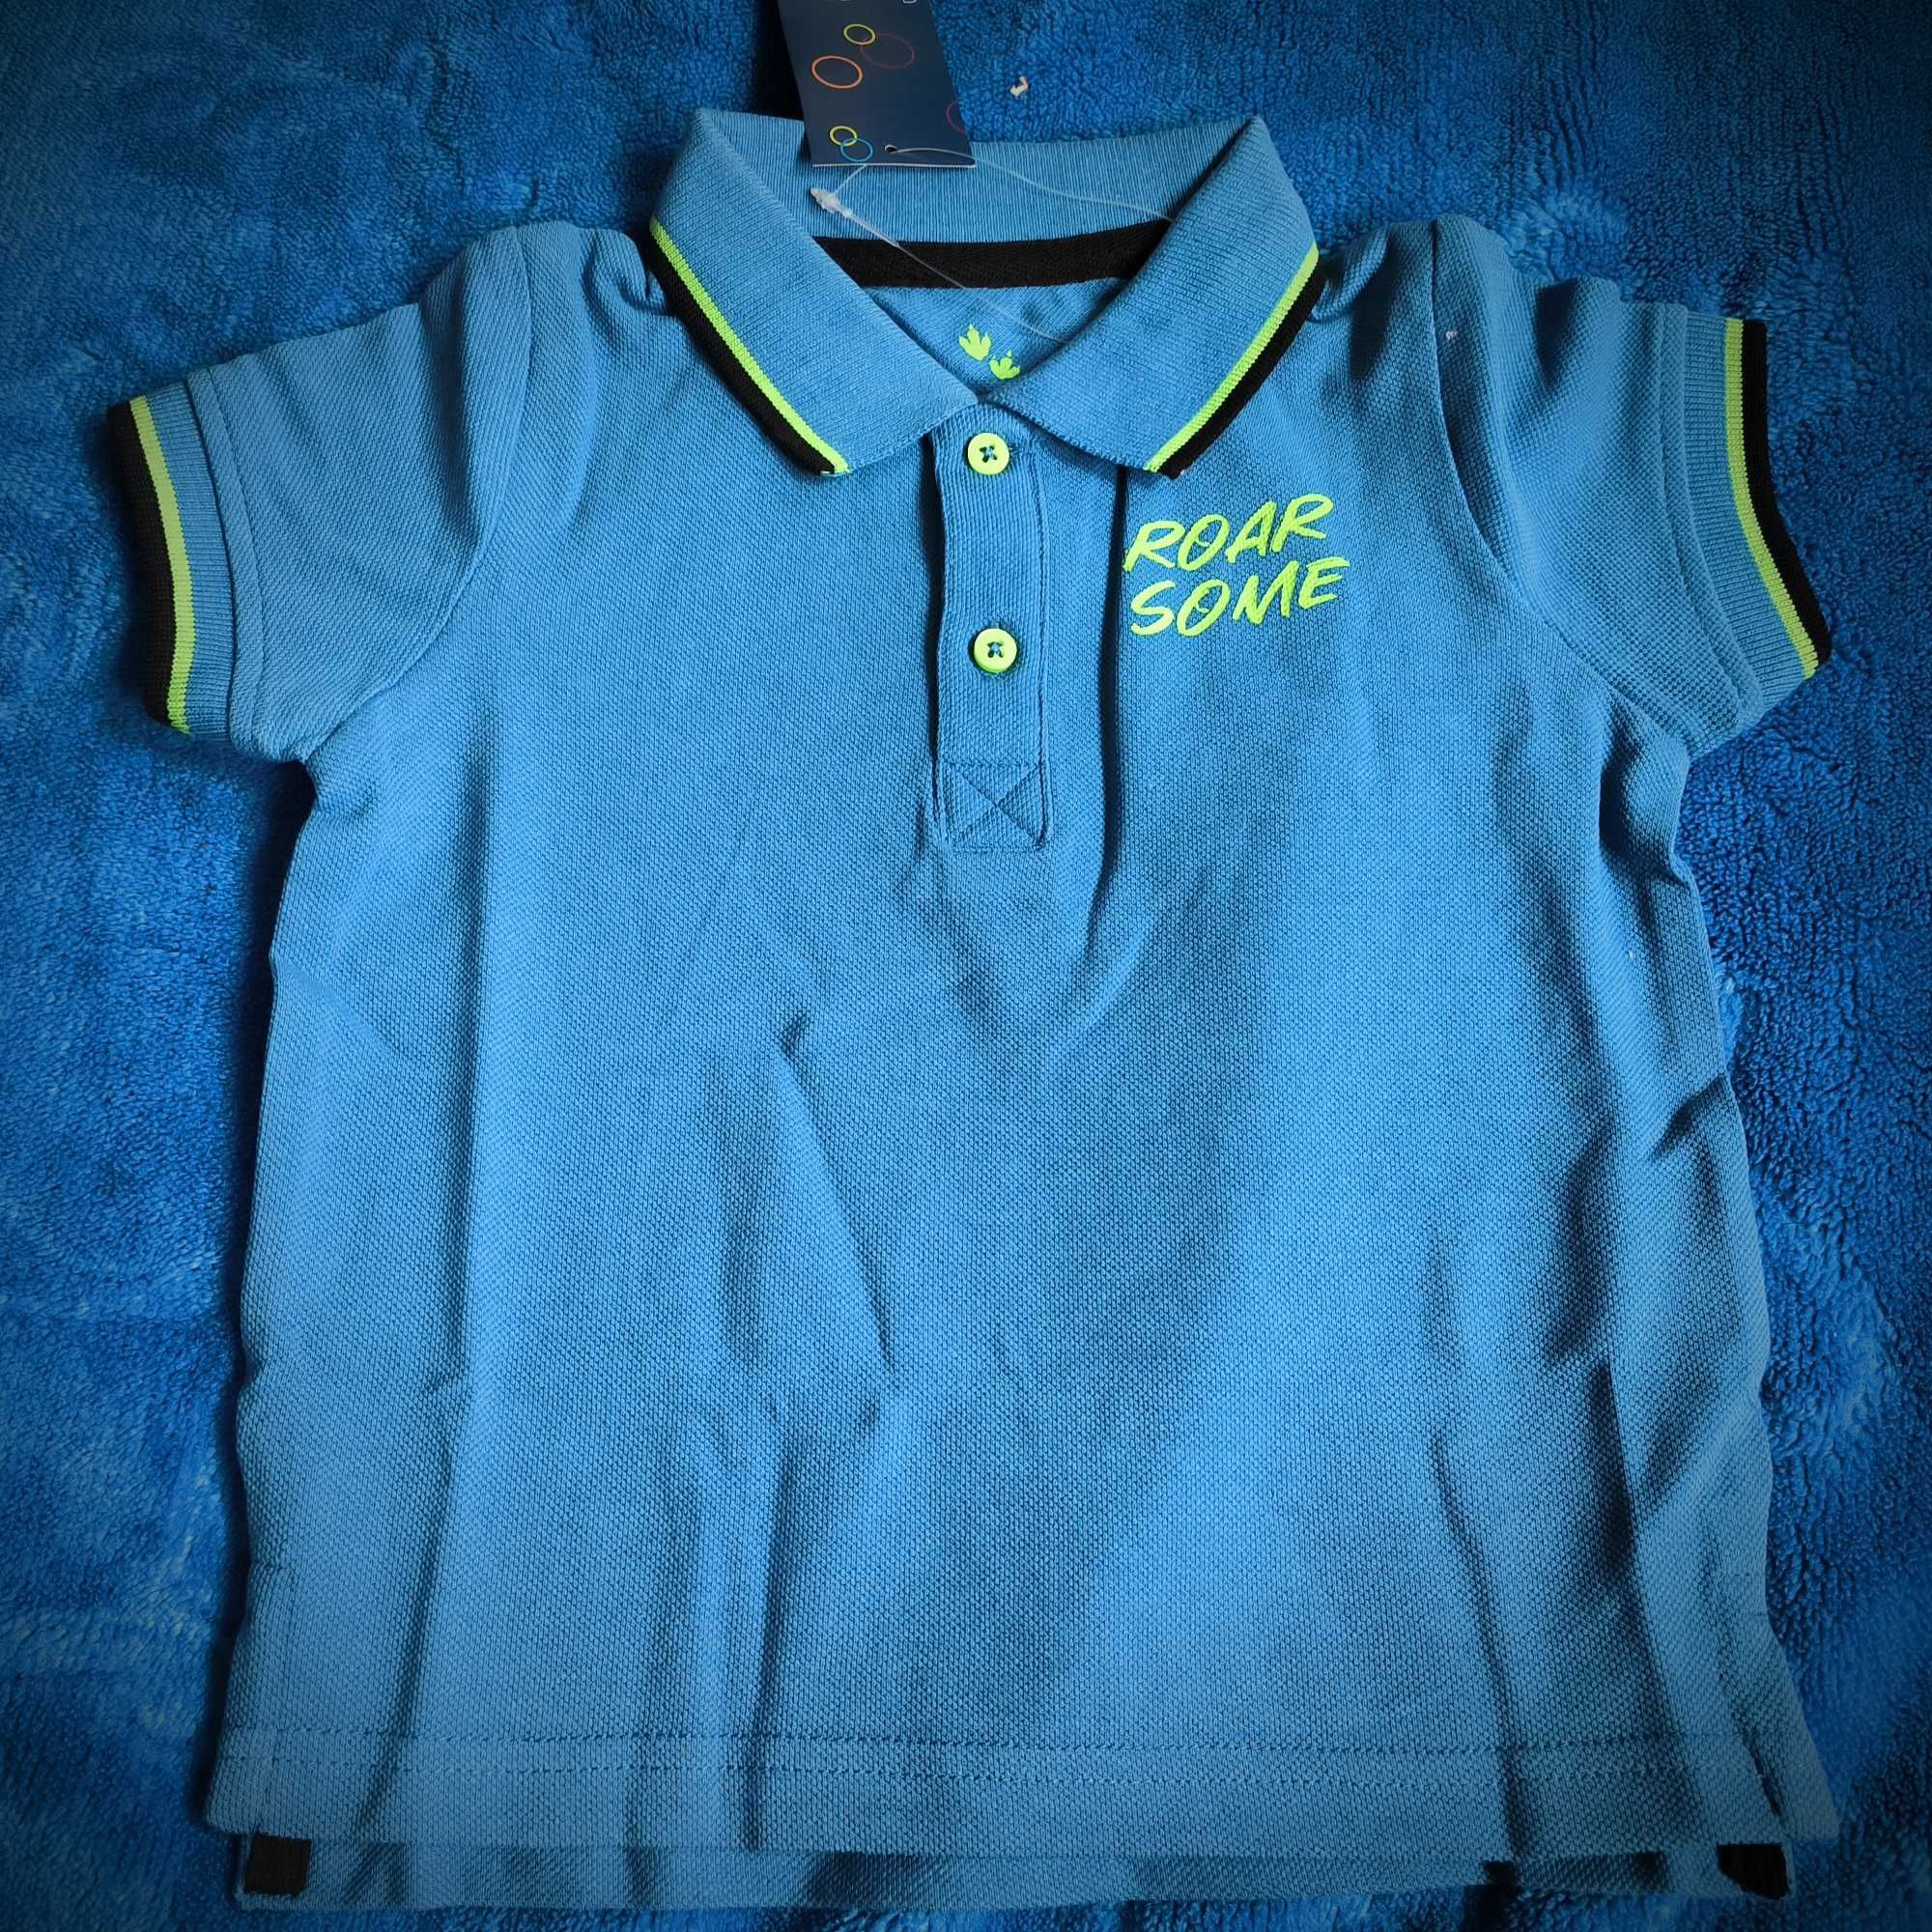 T-shirt polo niebieskie dłuższy tył. Nowy z metką bliźniaki 98/104